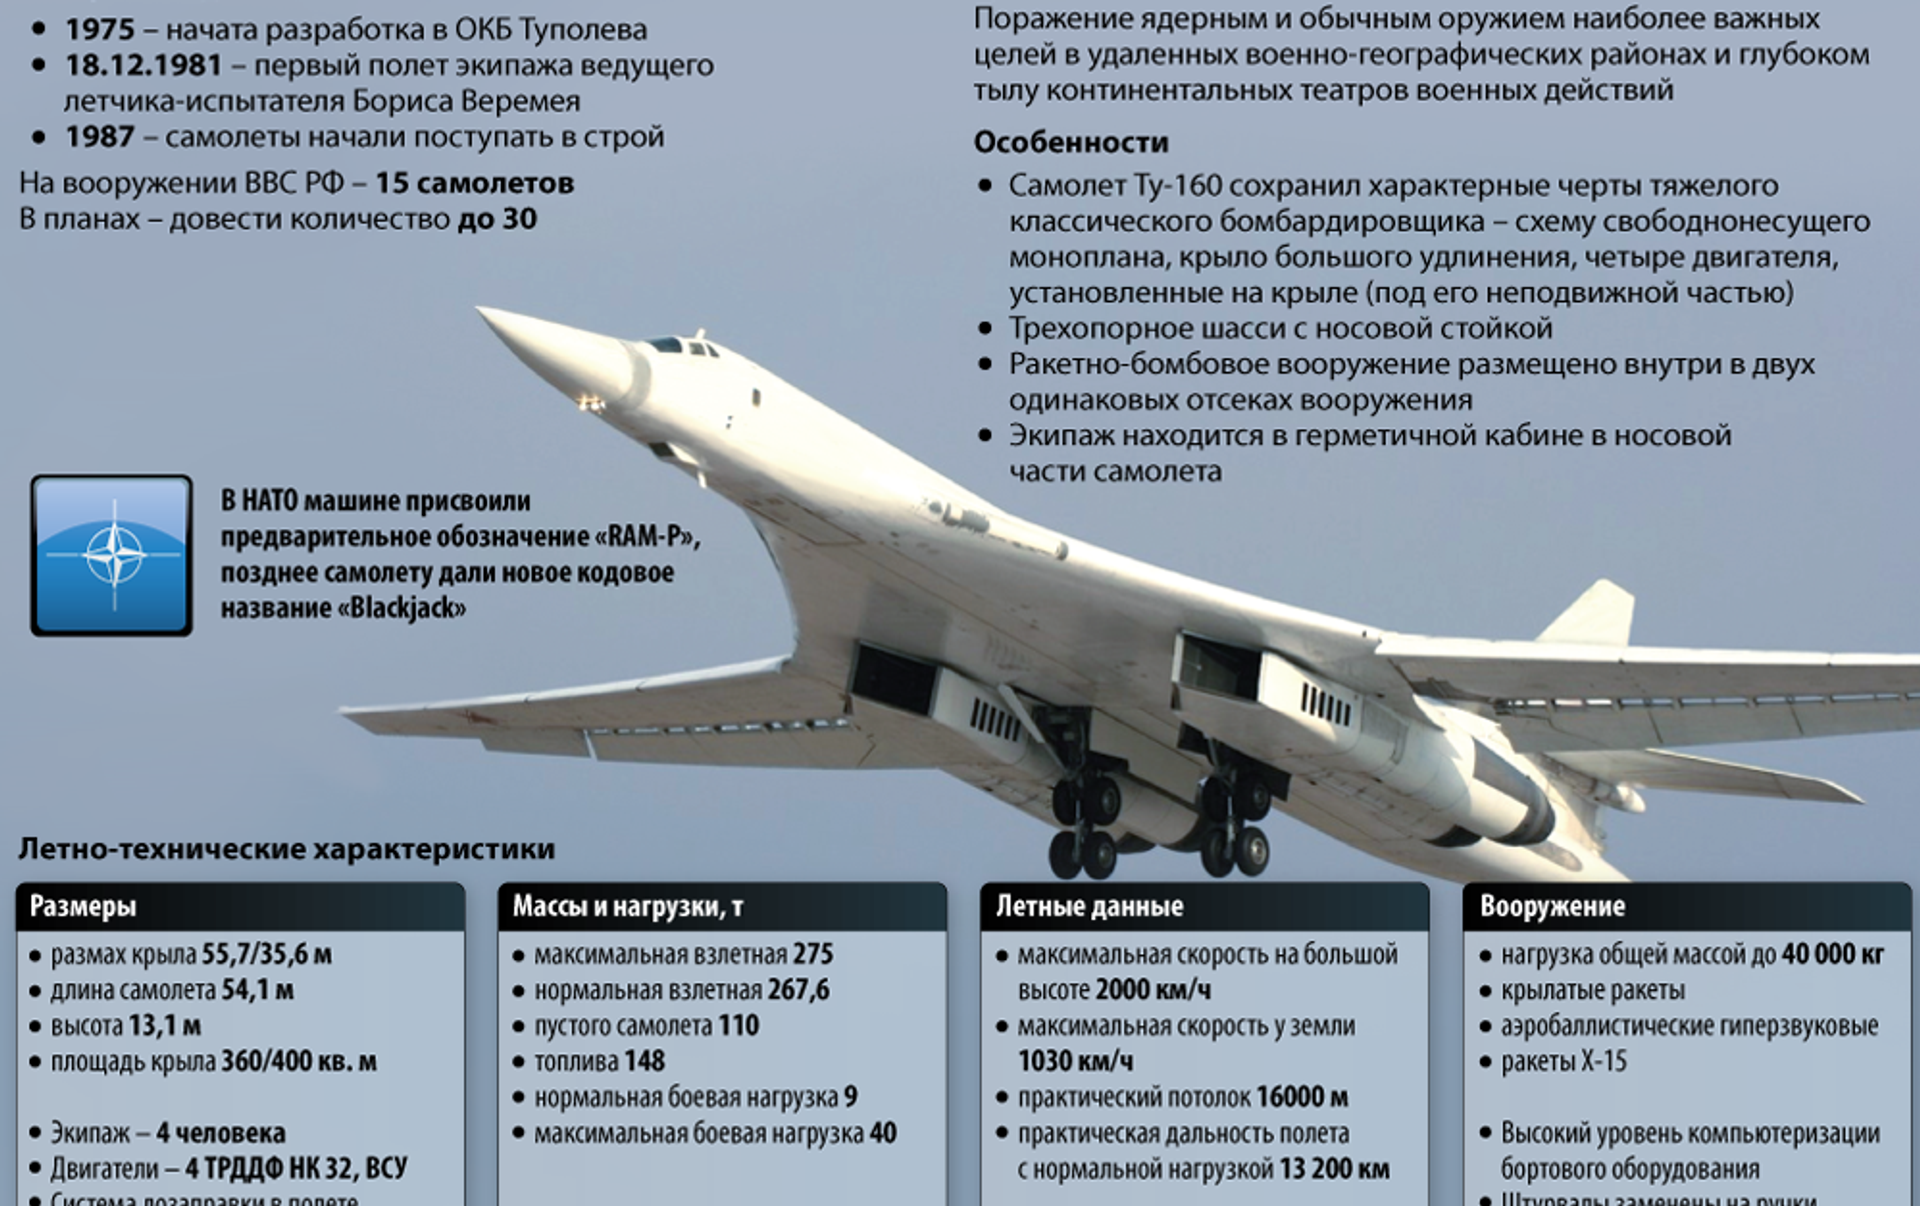 Название какой стратегической высоты. Белый лебедь самолет ту 160 характеристики. Технические характеристики самолета ту 160 белый лебедь. Стратегический бомбардировщик ту-160 белый лебедь. Ту-160 сверхзвуковой самолёт.